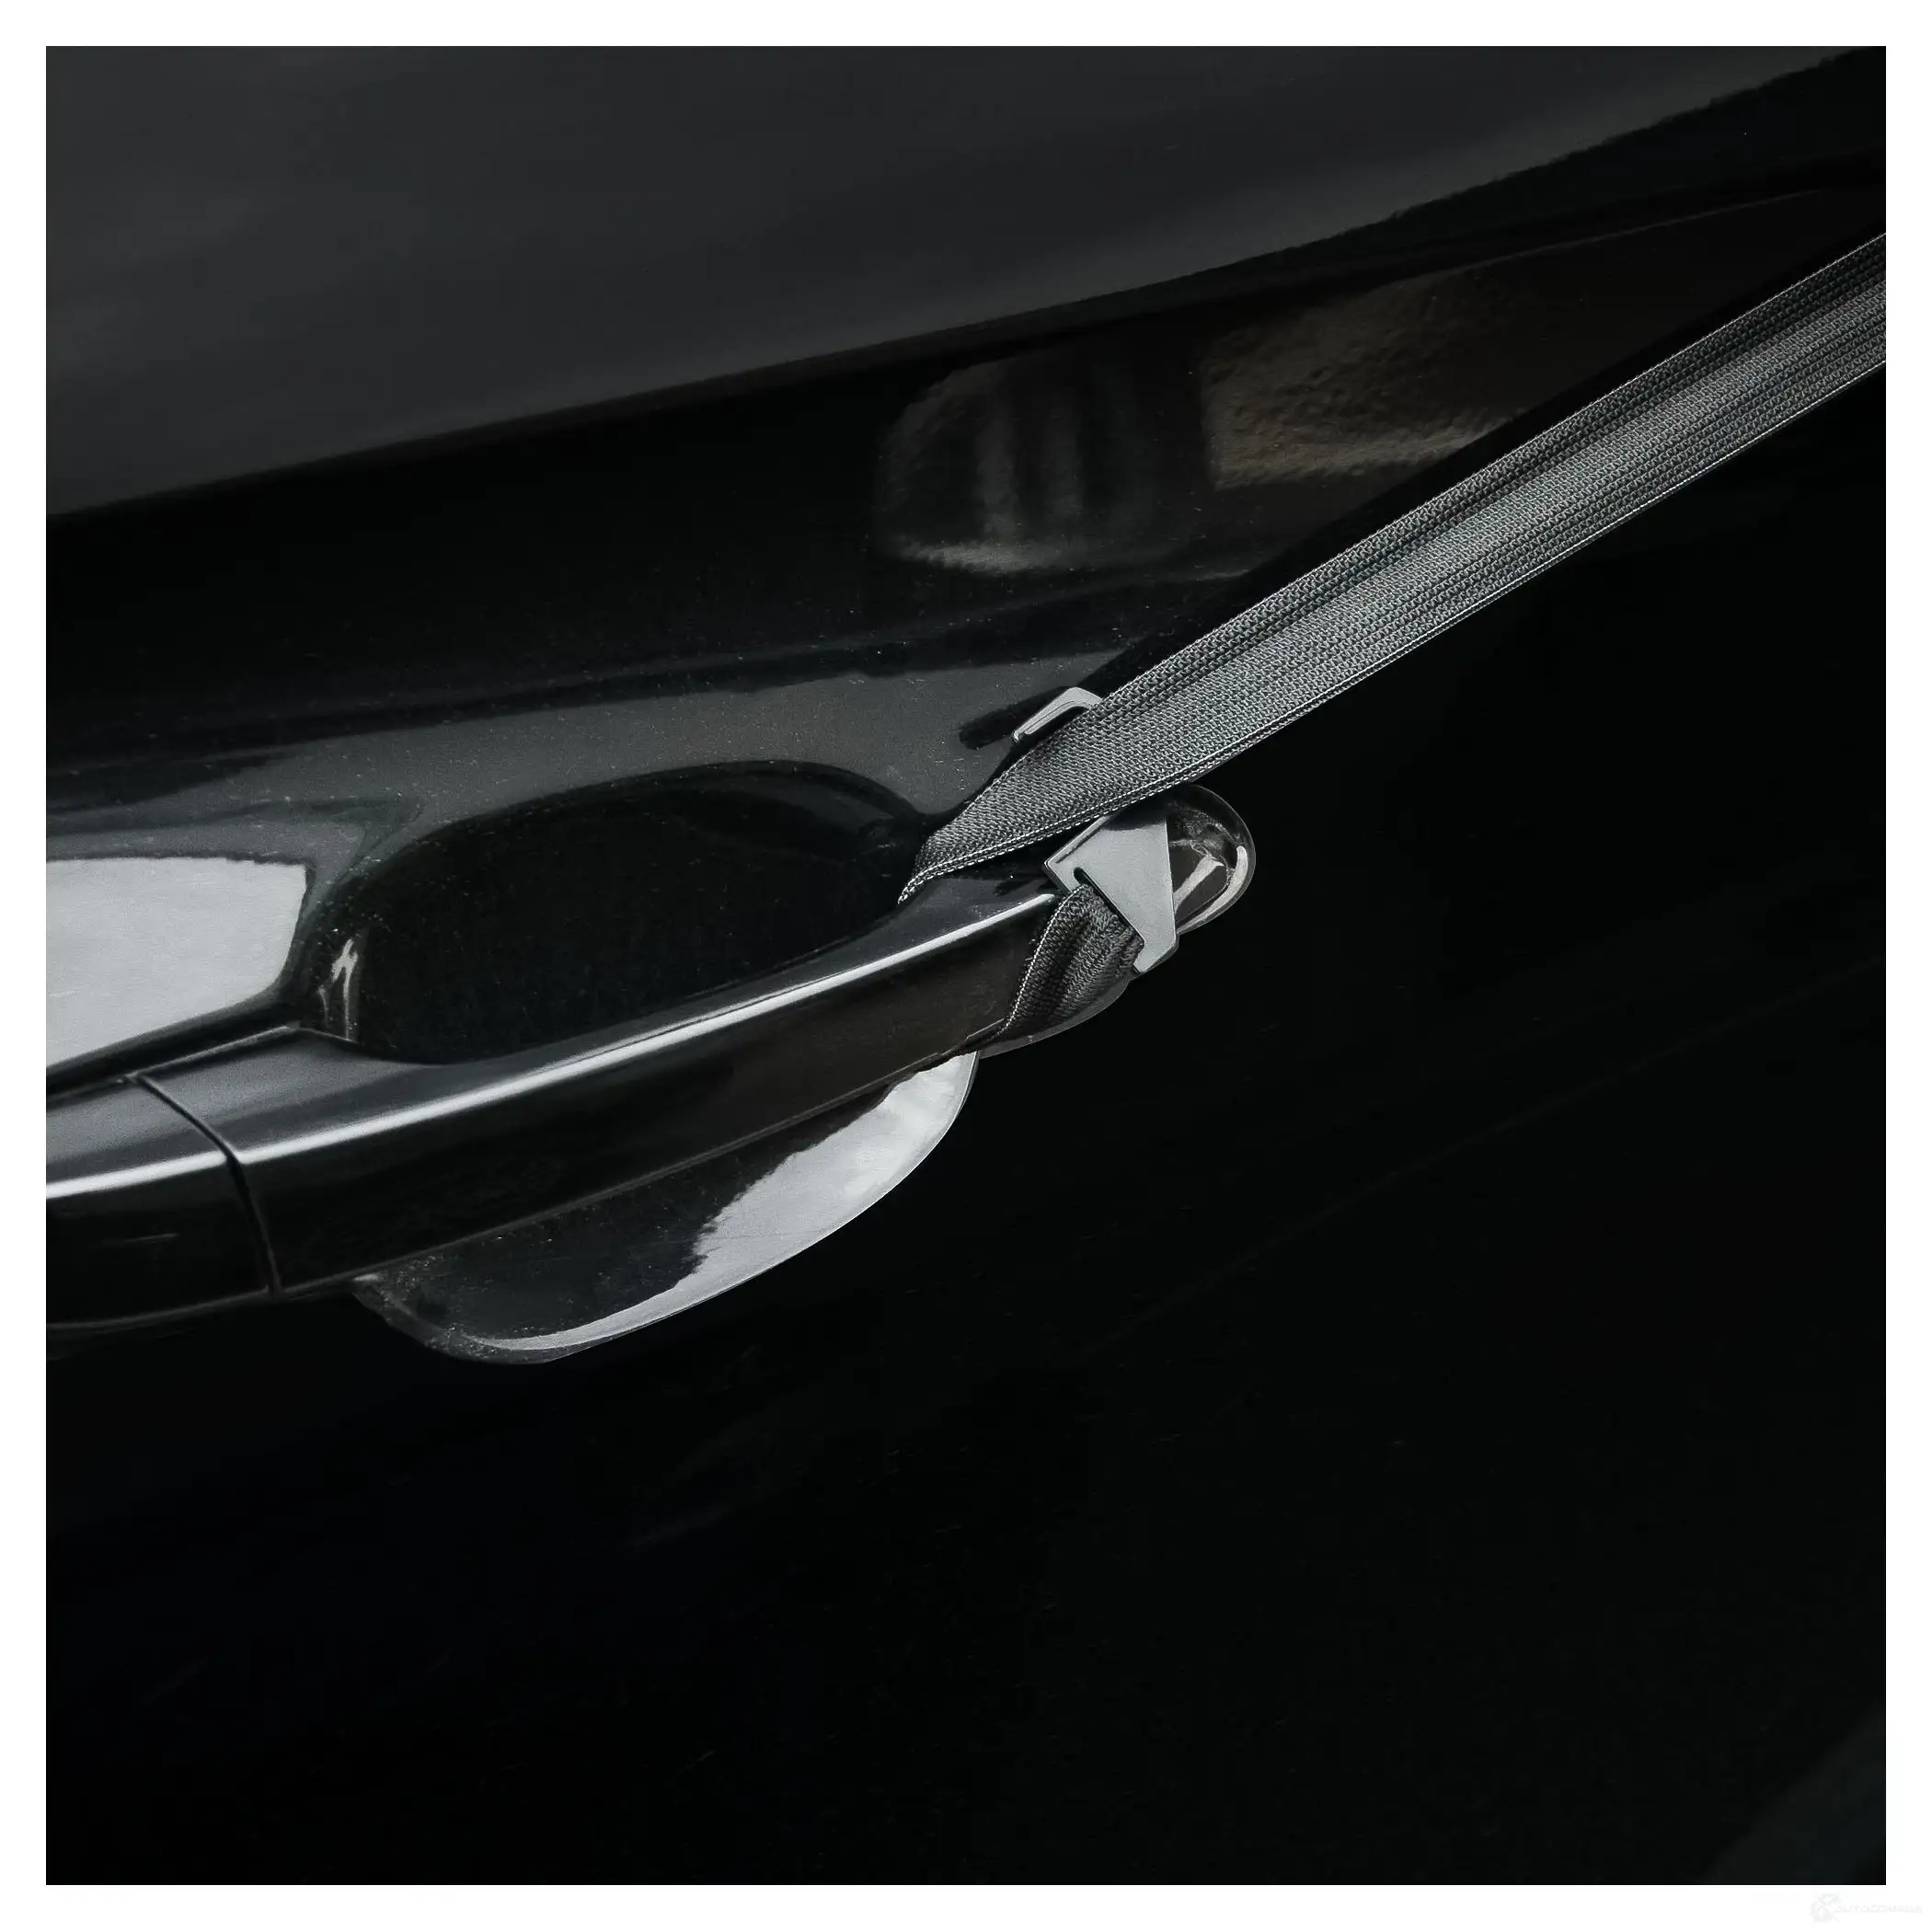 Чехол-тент на лоб.стекло и перед.окна авто, защитный (130*140*52 см) универсал., серый AIRLINE M28 1U adct002 1438173123 изображение 3